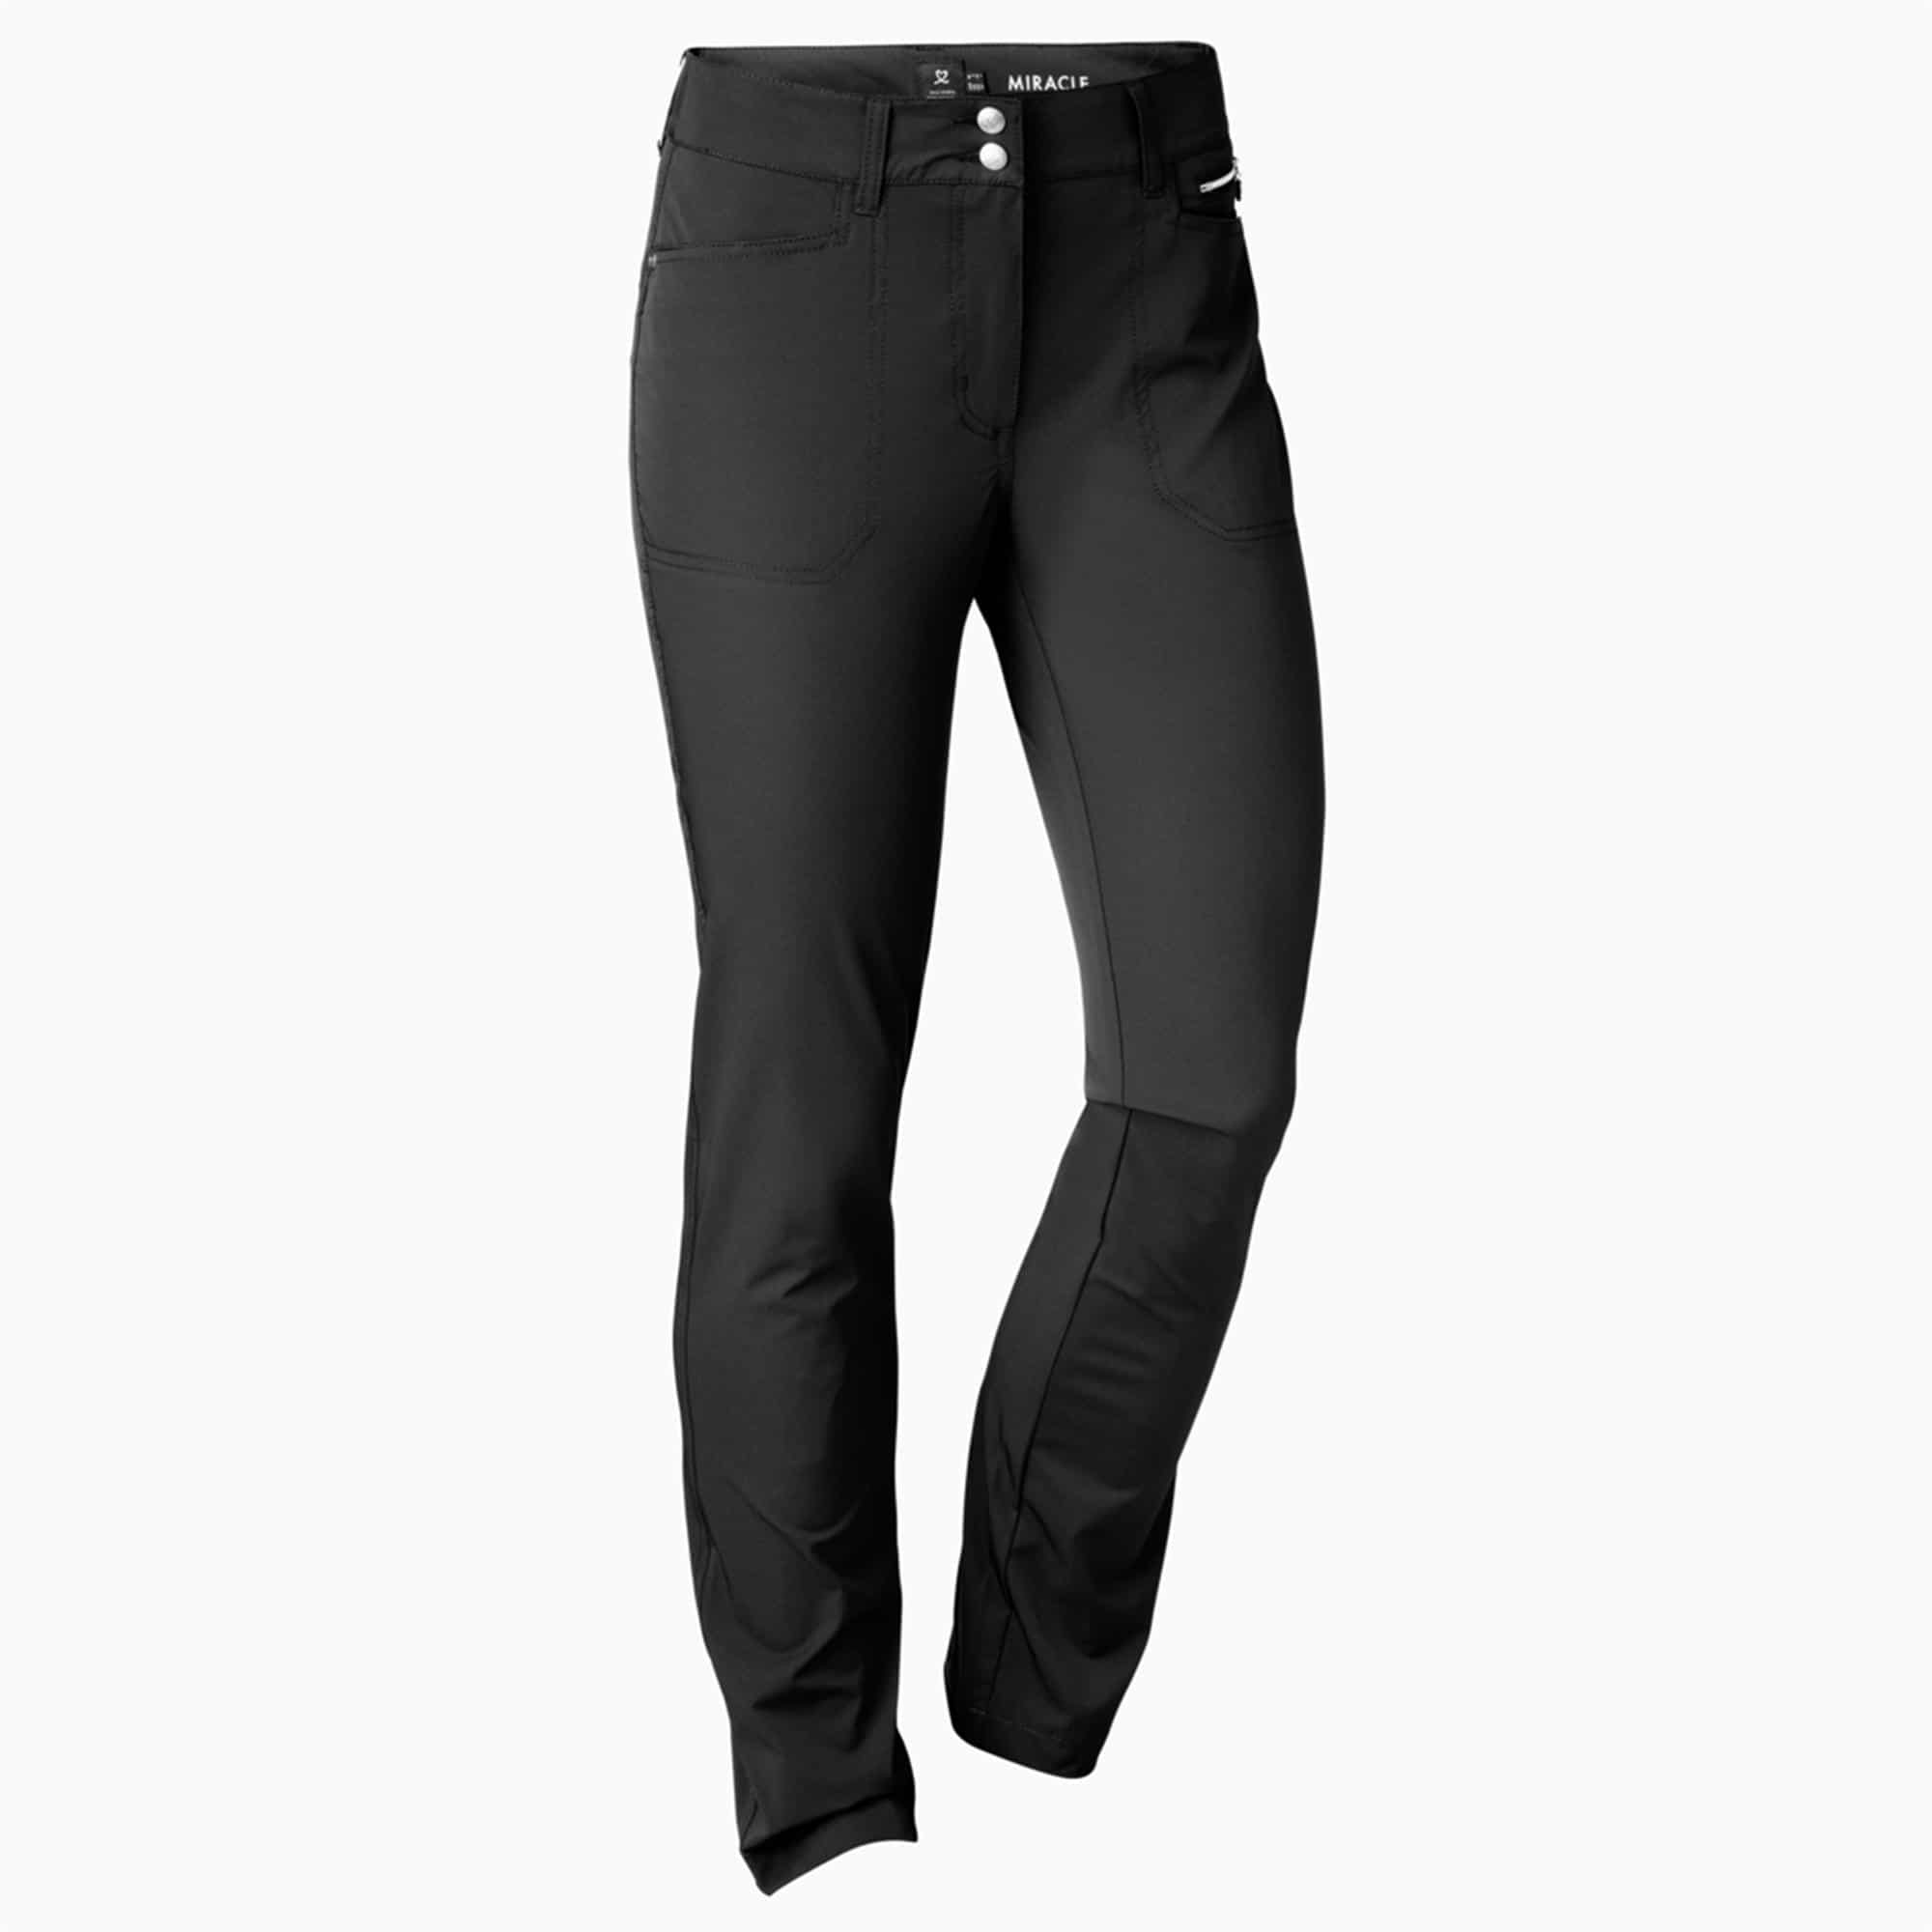 Rohnisch Chie Ladies Golf Pants 32 Inch Leg Black